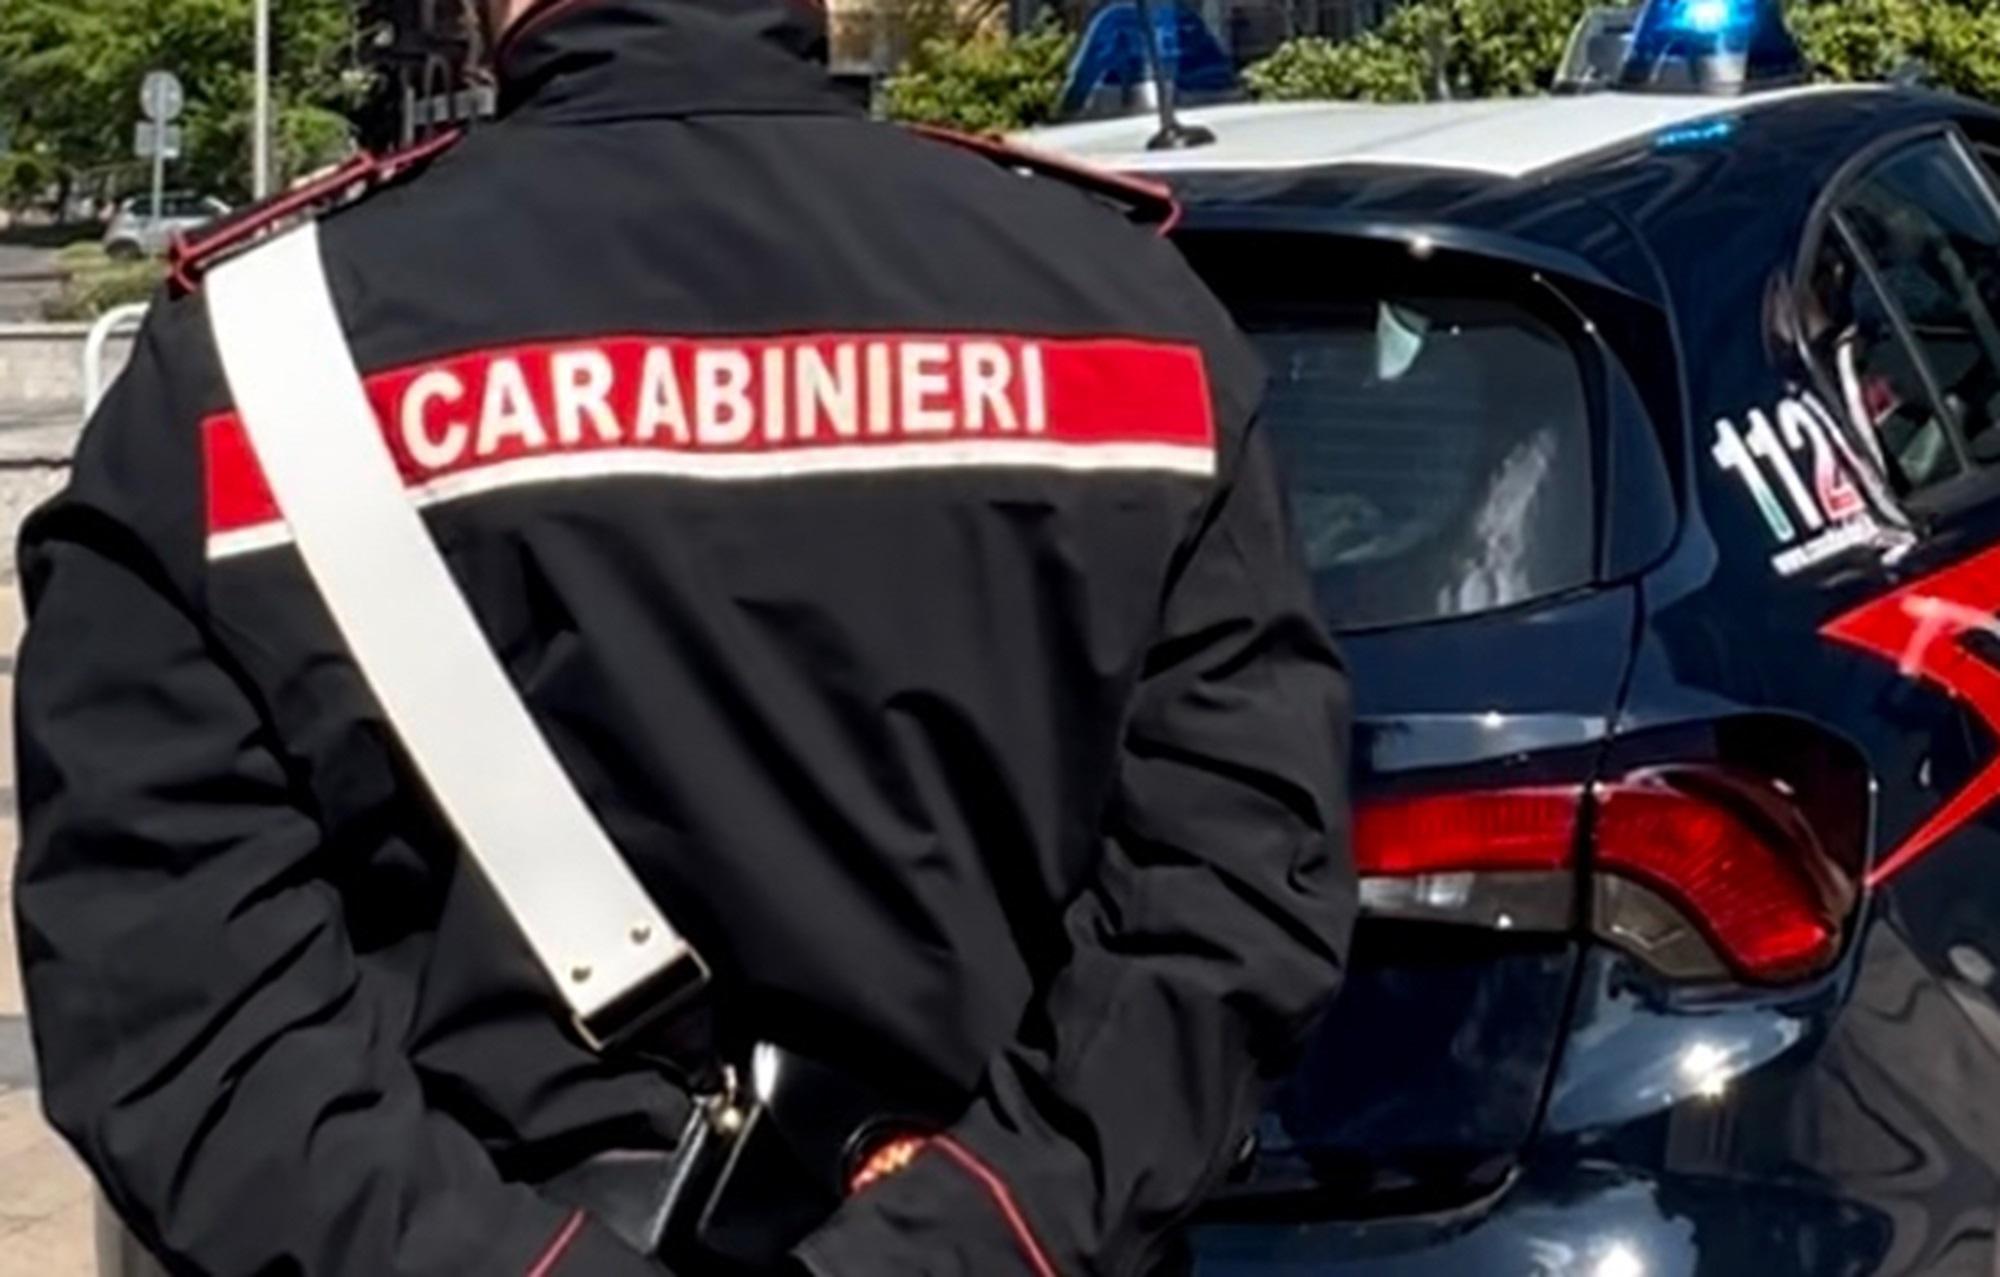 Roma - 22 anni in carcere per aver ucciso donna: arrestato di nuovo per stalking